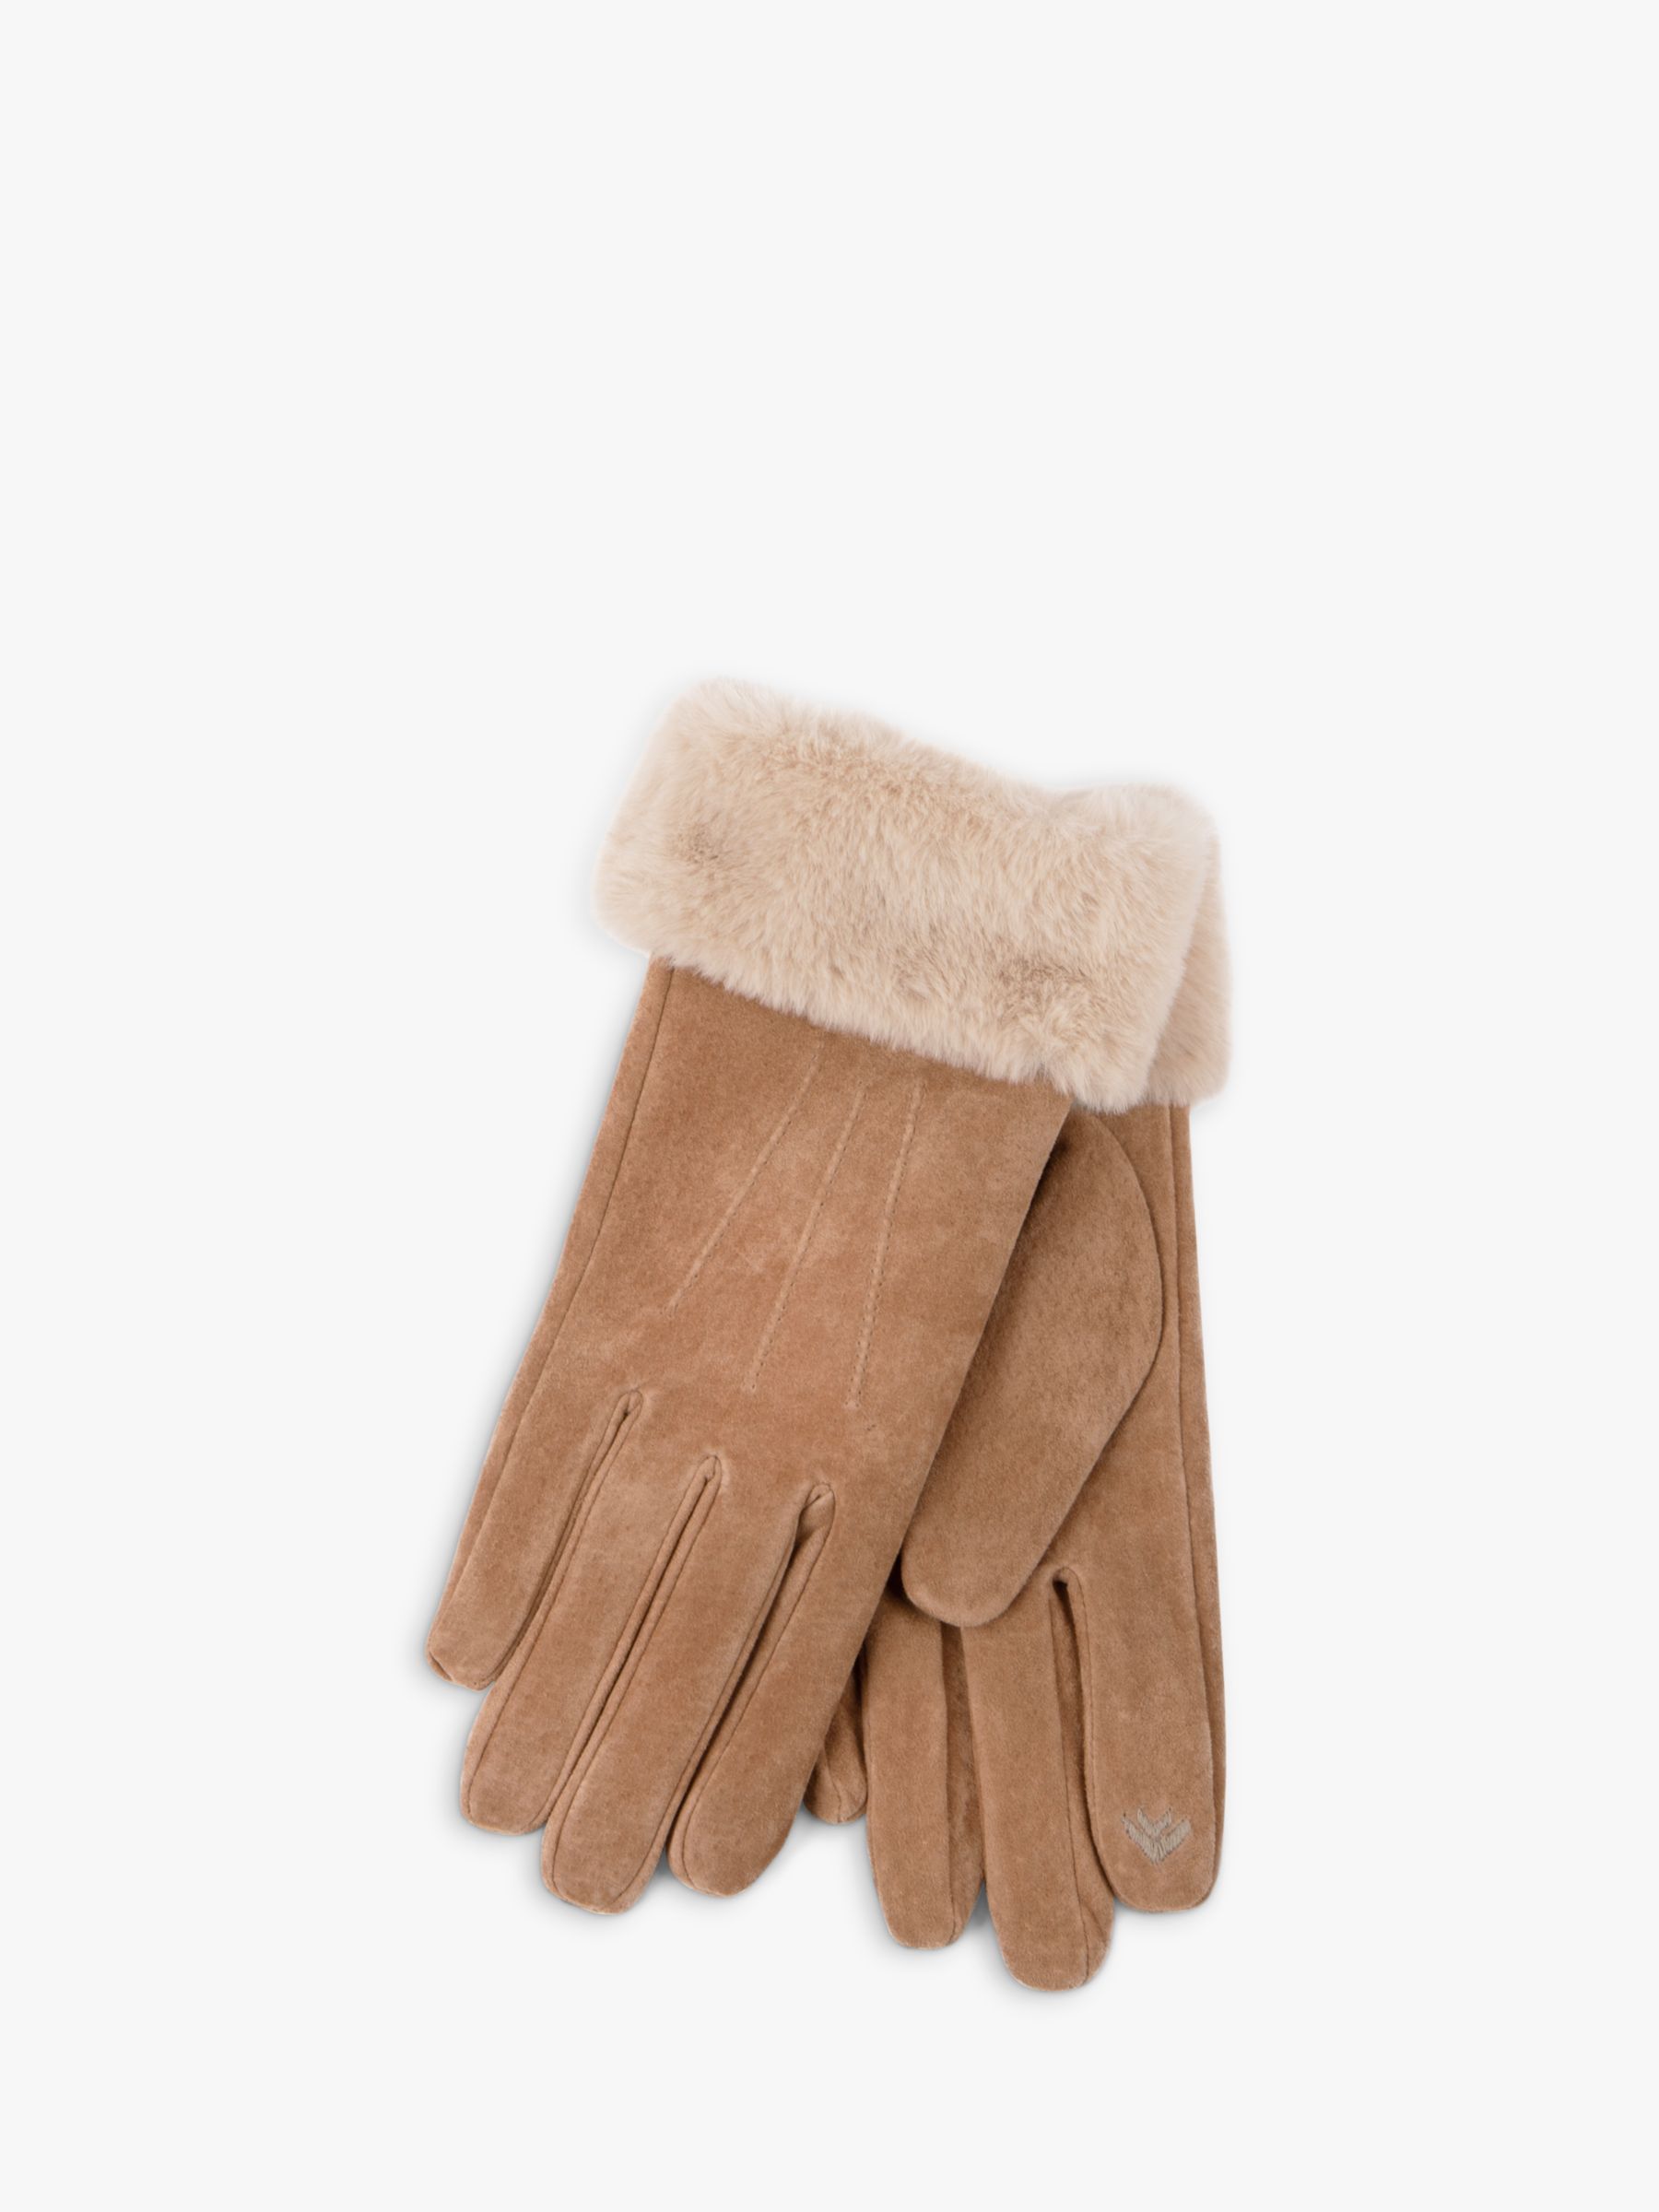 Трехточечные замшевые перчатки с манжетами из искусственного меха totes, тан кожаные перчатки премиум класса с тремя точками totes шоколад